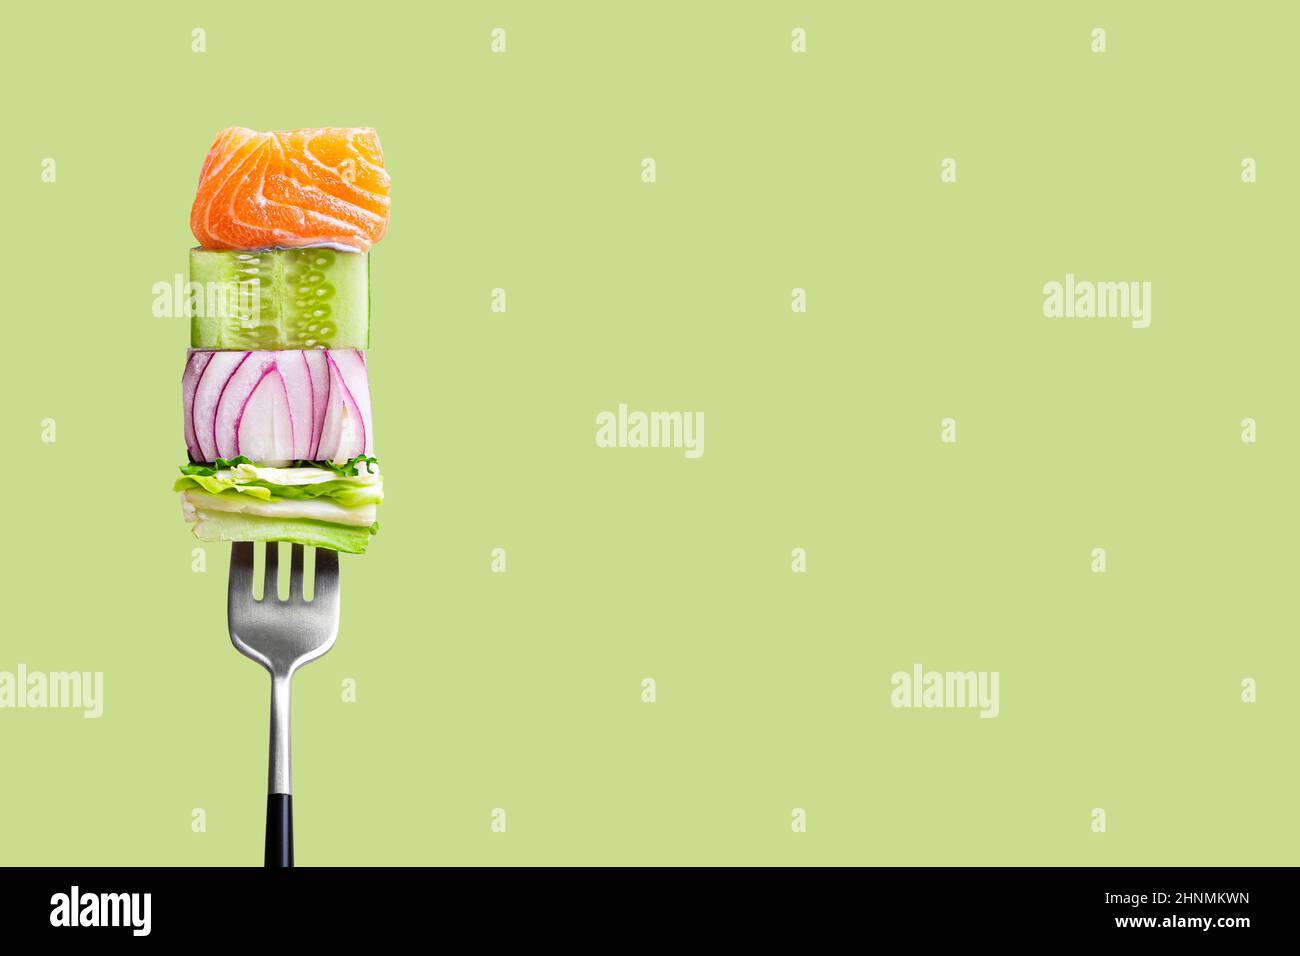 fourchette avec nourriture sur elle: délicieux filet de saumon, concombre, oignon, salade sur fond vert Banque D'Images